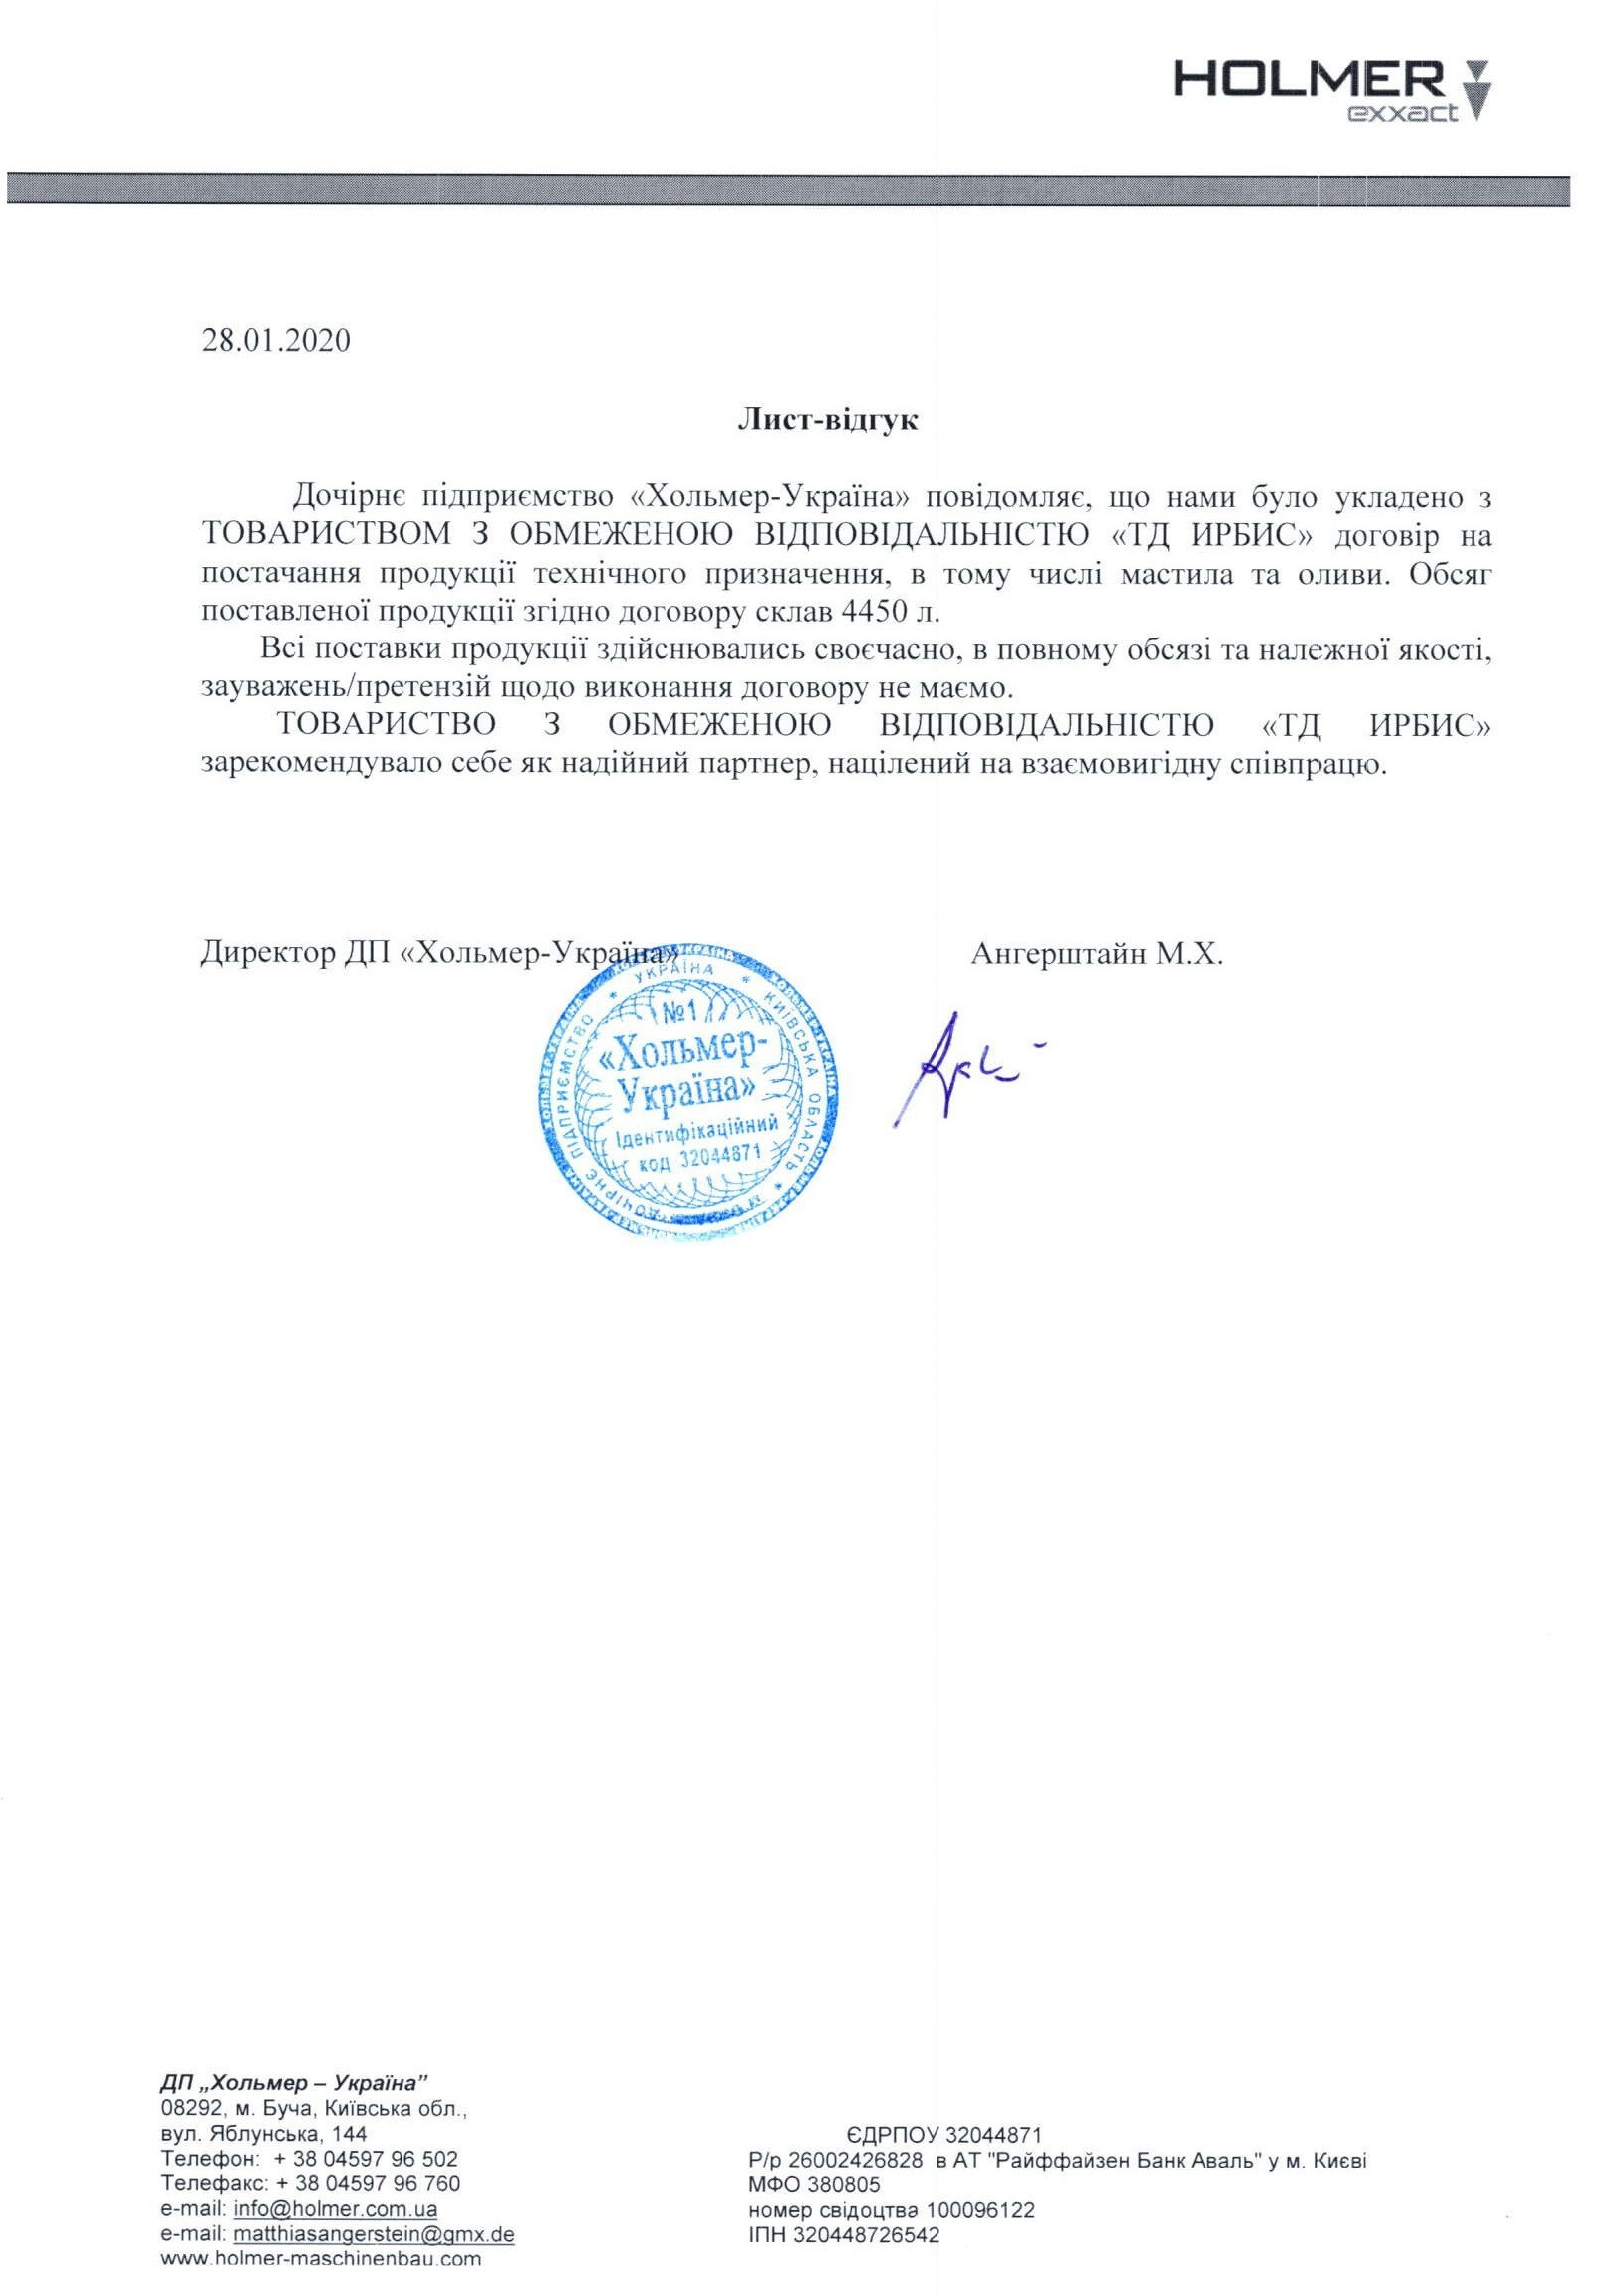 Письмо-отзыв Хольмер-Украина 28.01.2020